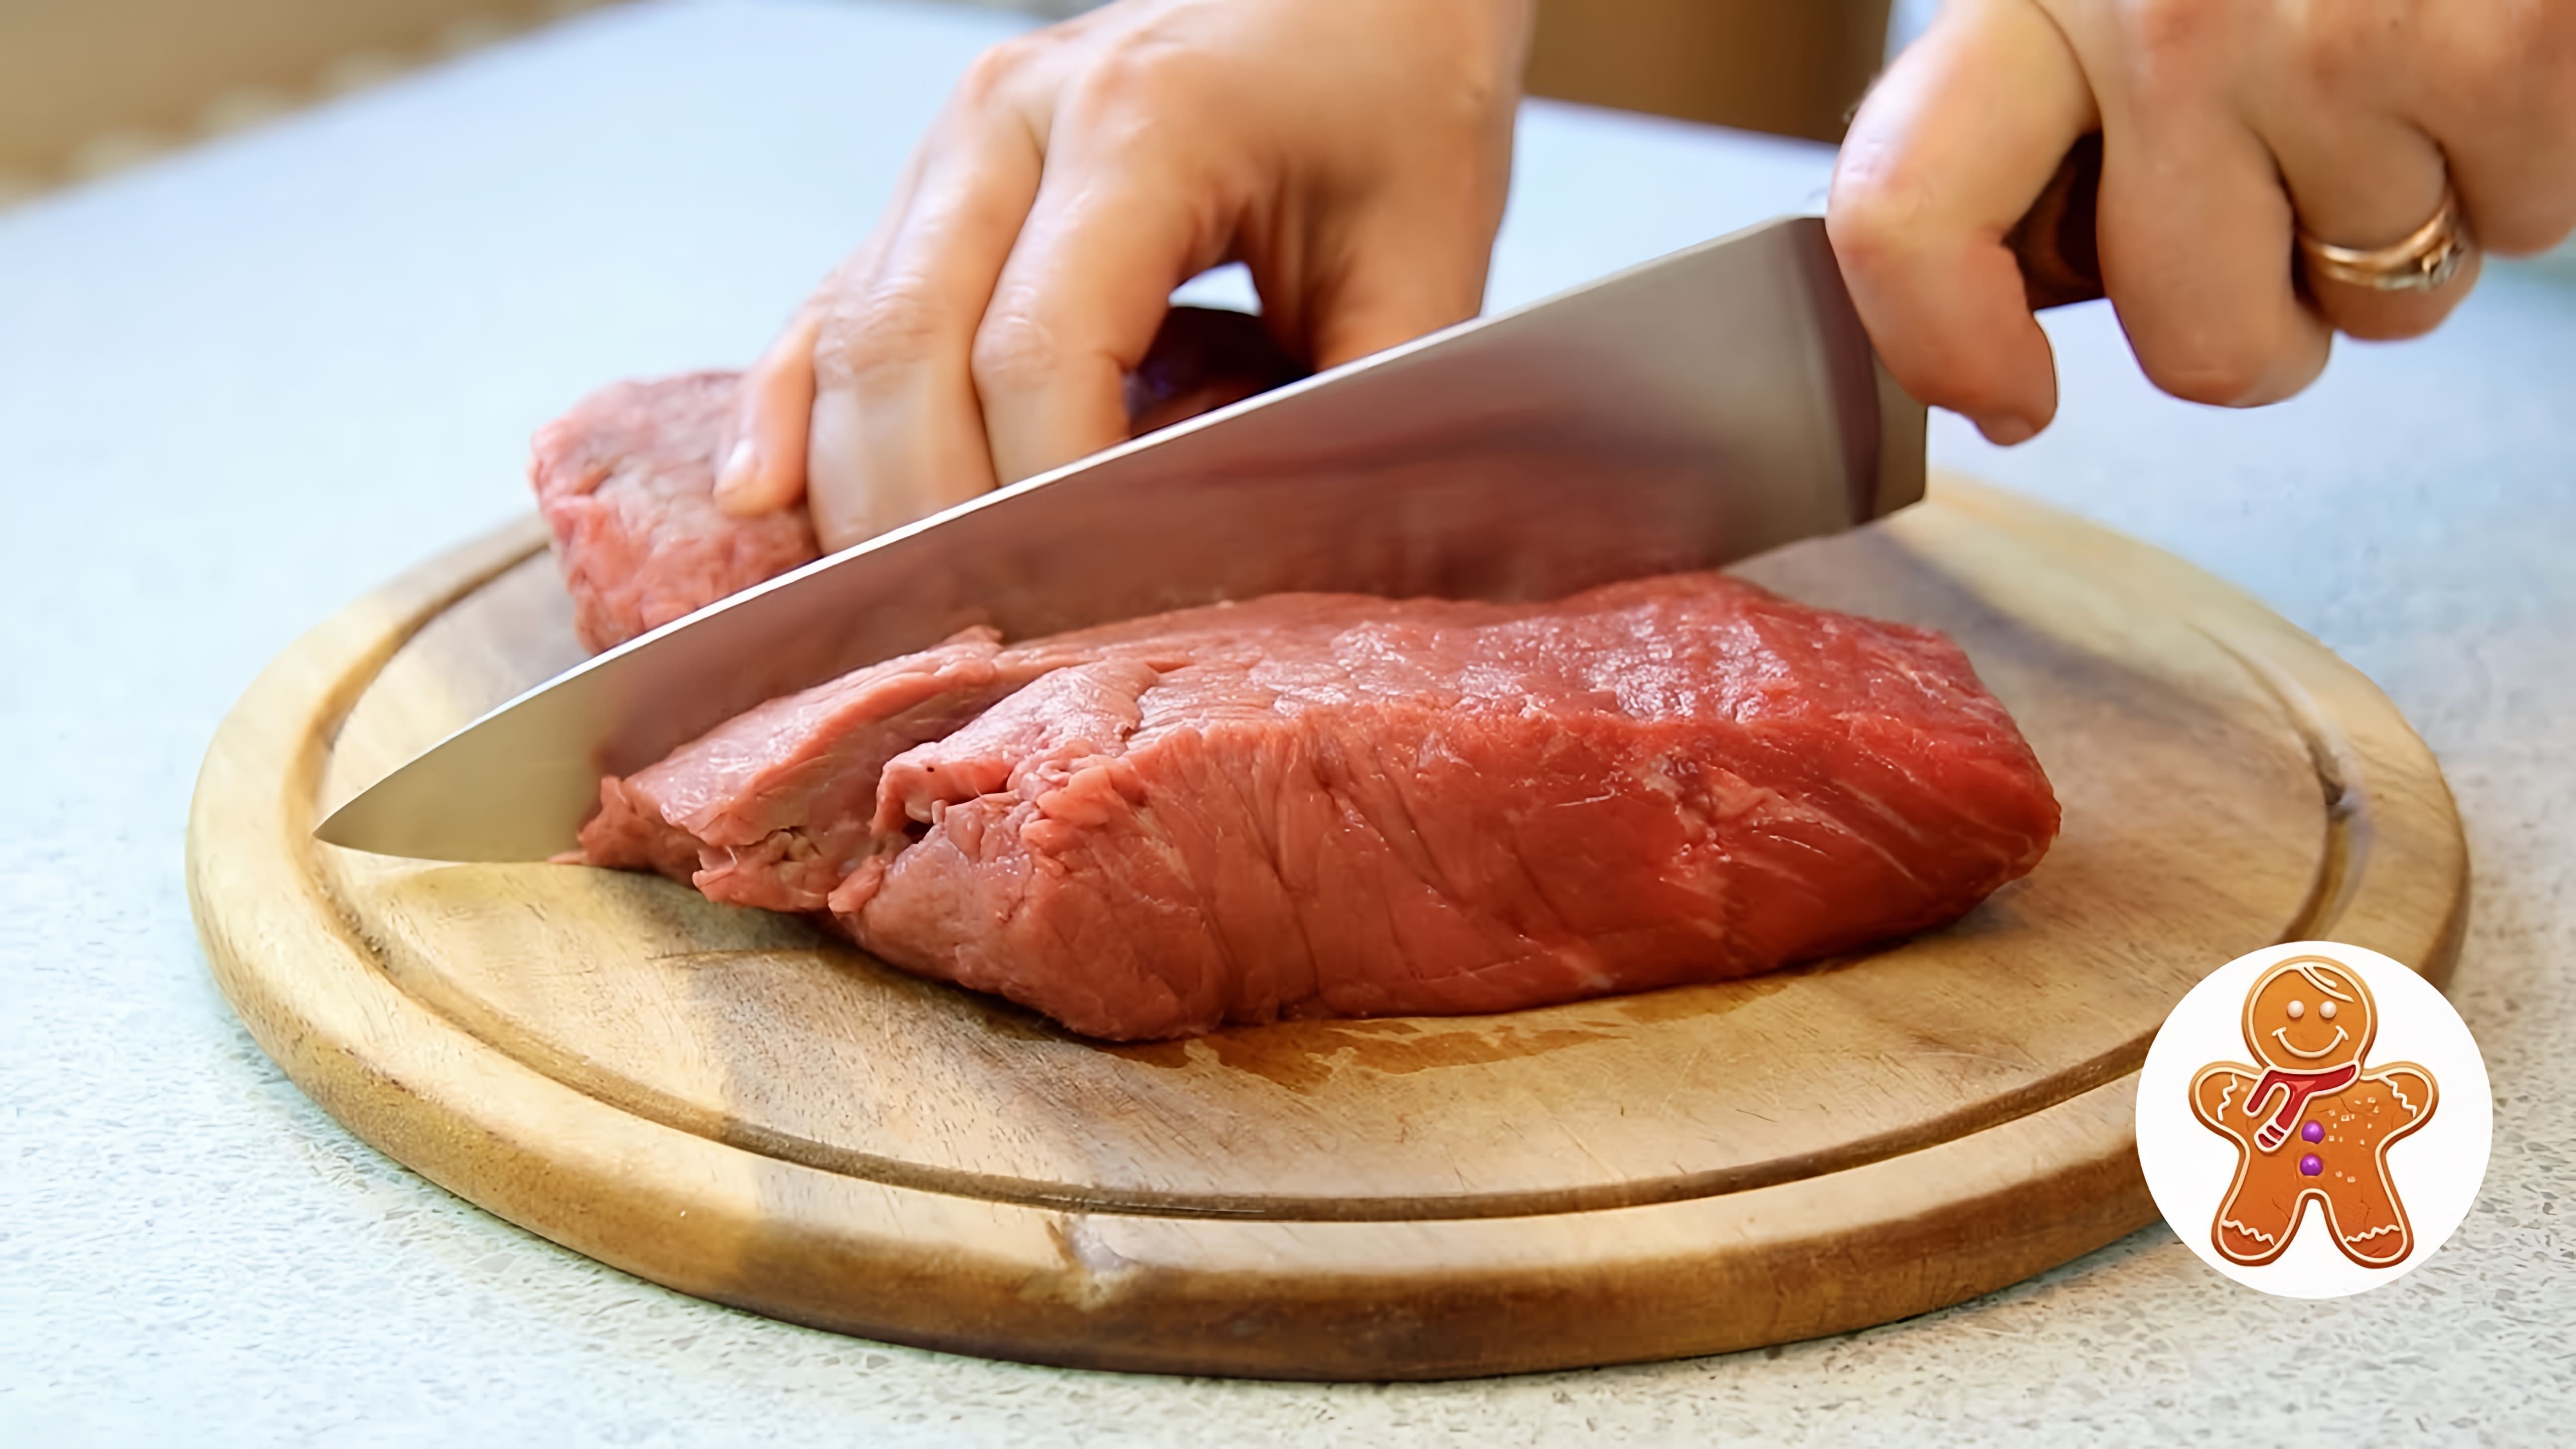 В этом видео демонстрируется процесс приготовления мяса по-еврейски